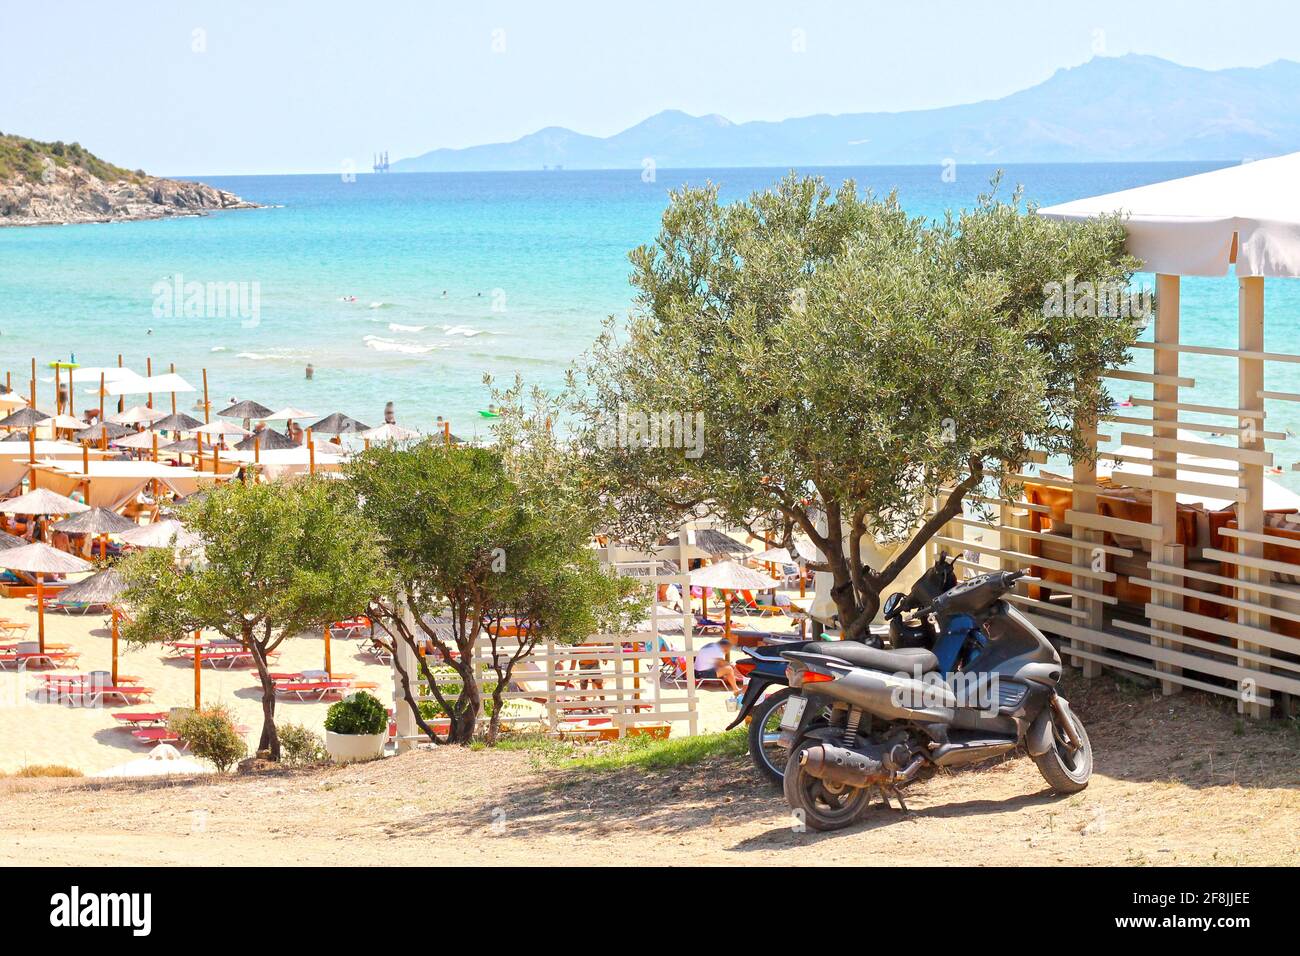 La playa de Ammolofoi es la más popular y hermosa del norte de Grecia. Situado a unas 1km de N. Peramos, cerca de Kavala. Foto de stock